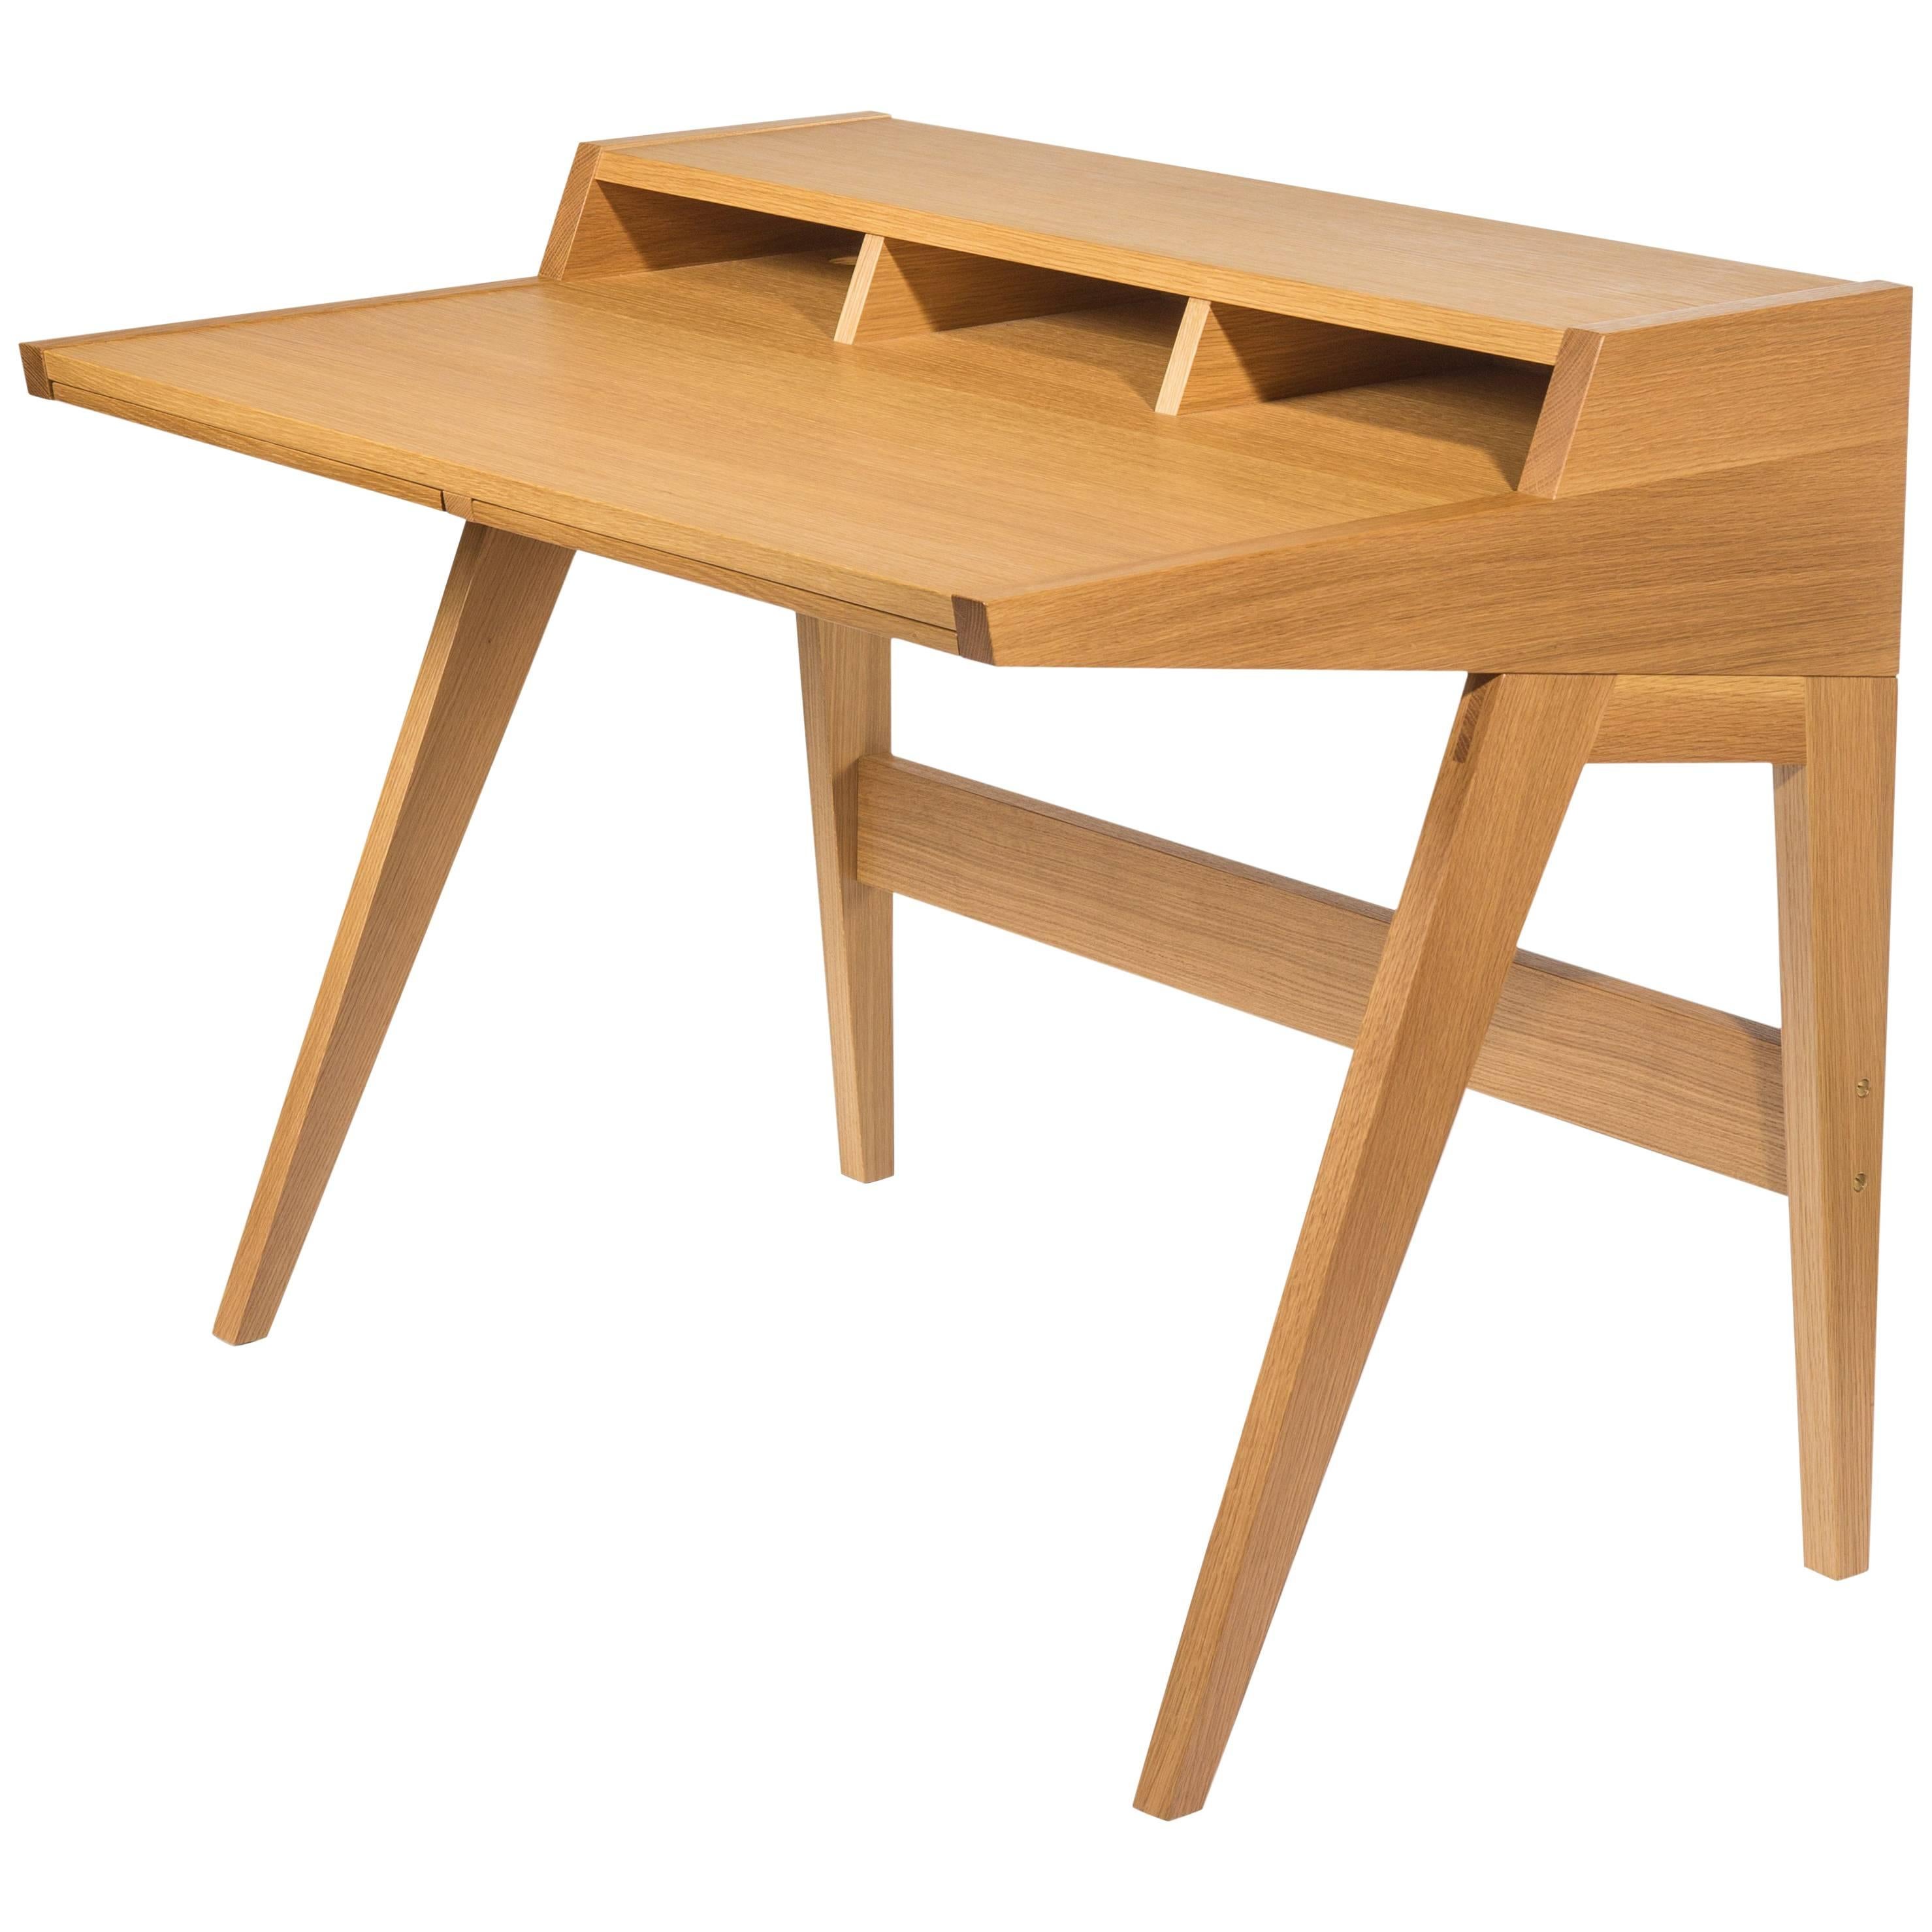 Phloem Studio Laura Desk, Handmade Modern Secretary Desk in Walnut or White Oak